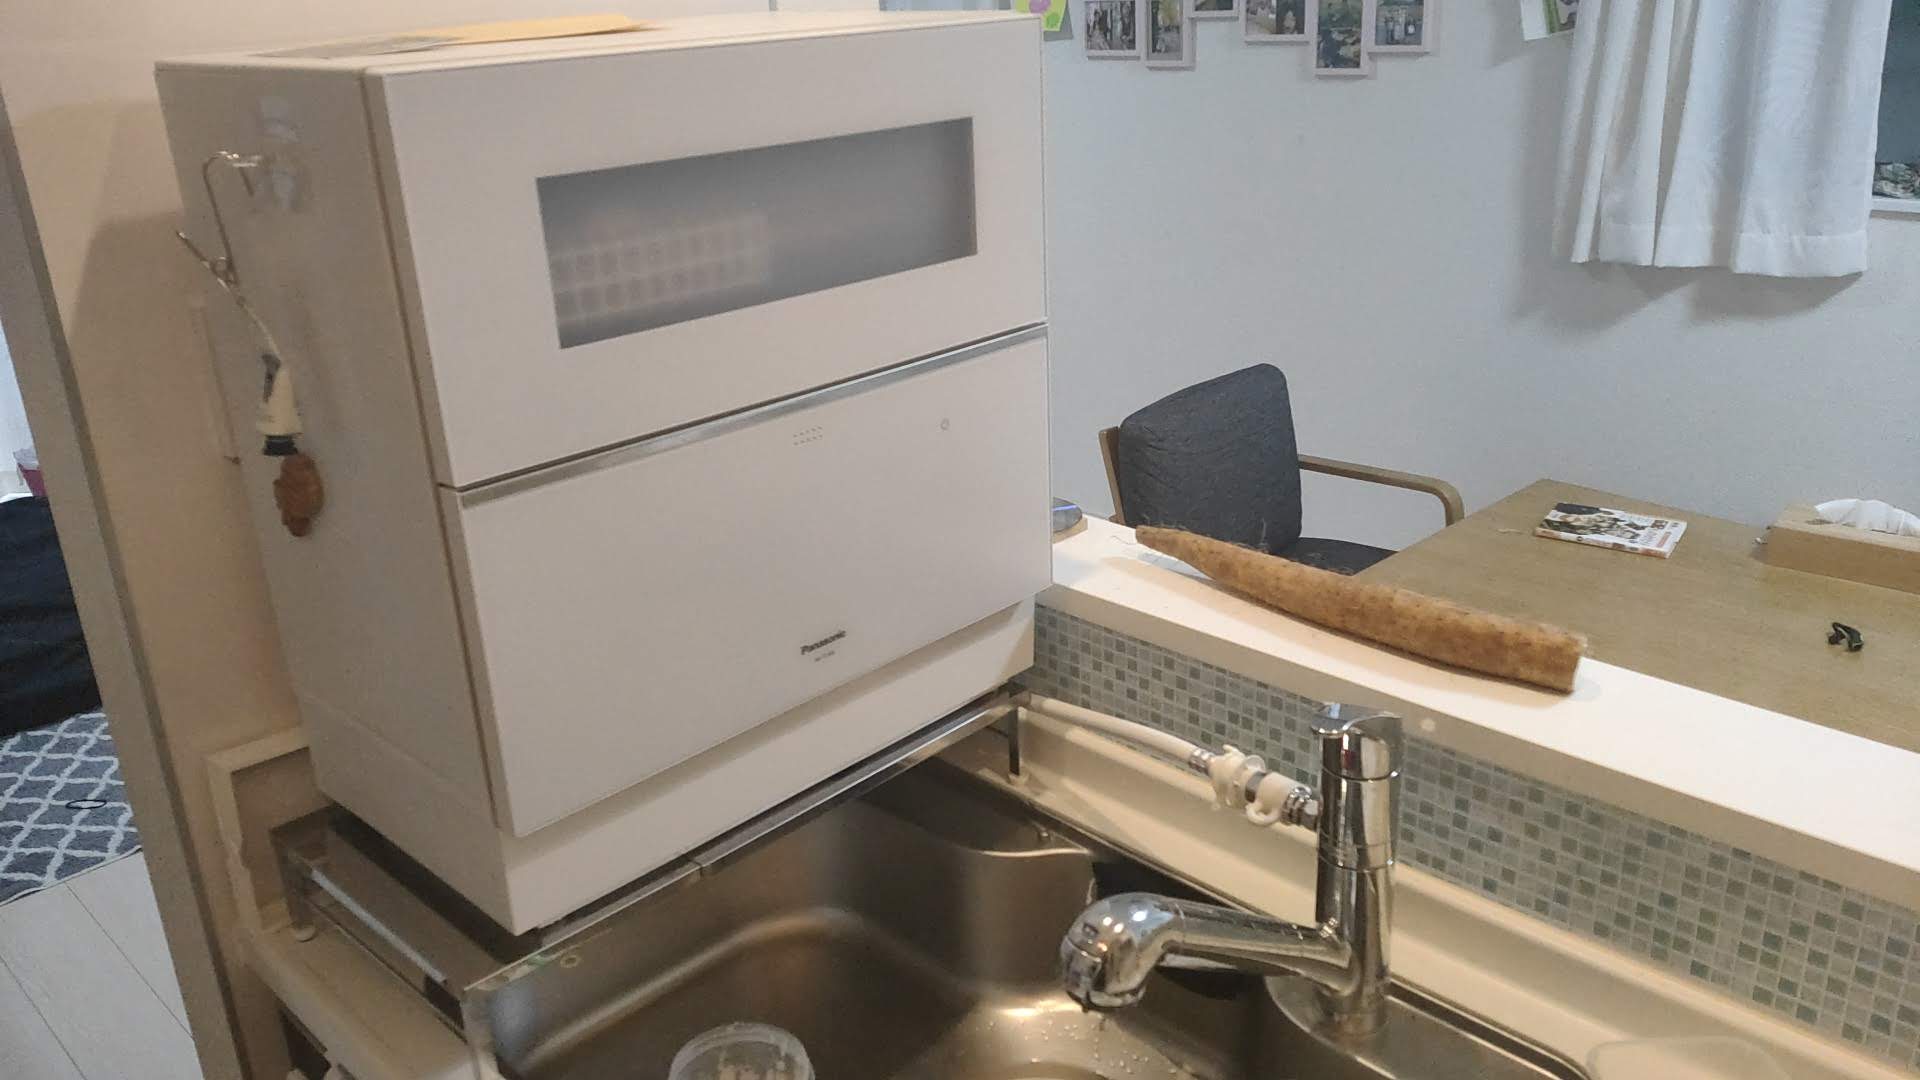 パナソニック食器洗い乾燥機NP-TZ300を買う。合計出費15万円